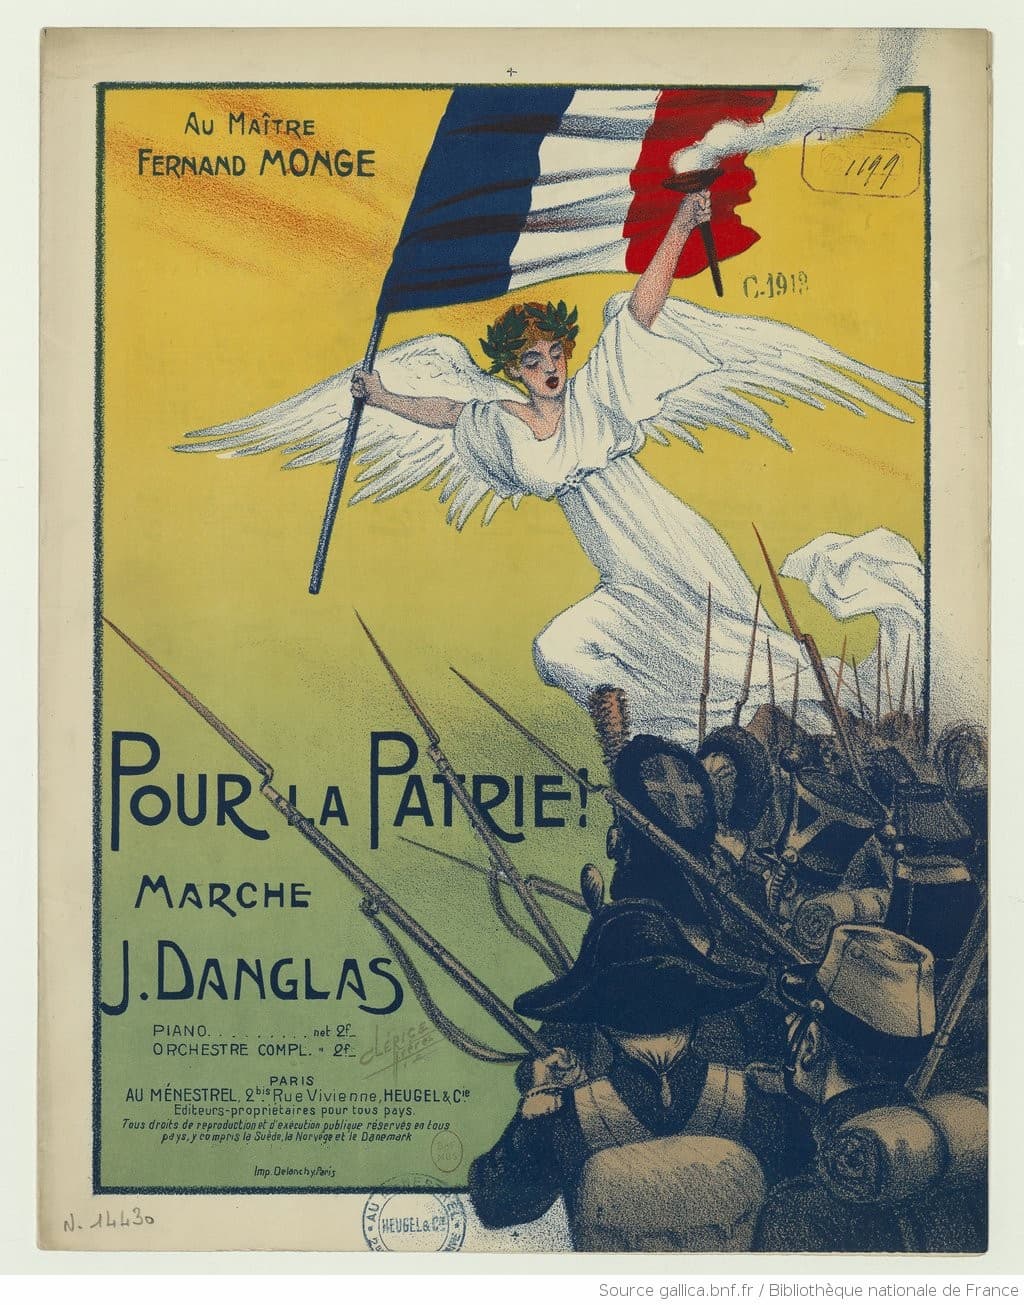 Pour la patrie !: marche, composed by Jeanne Danglas